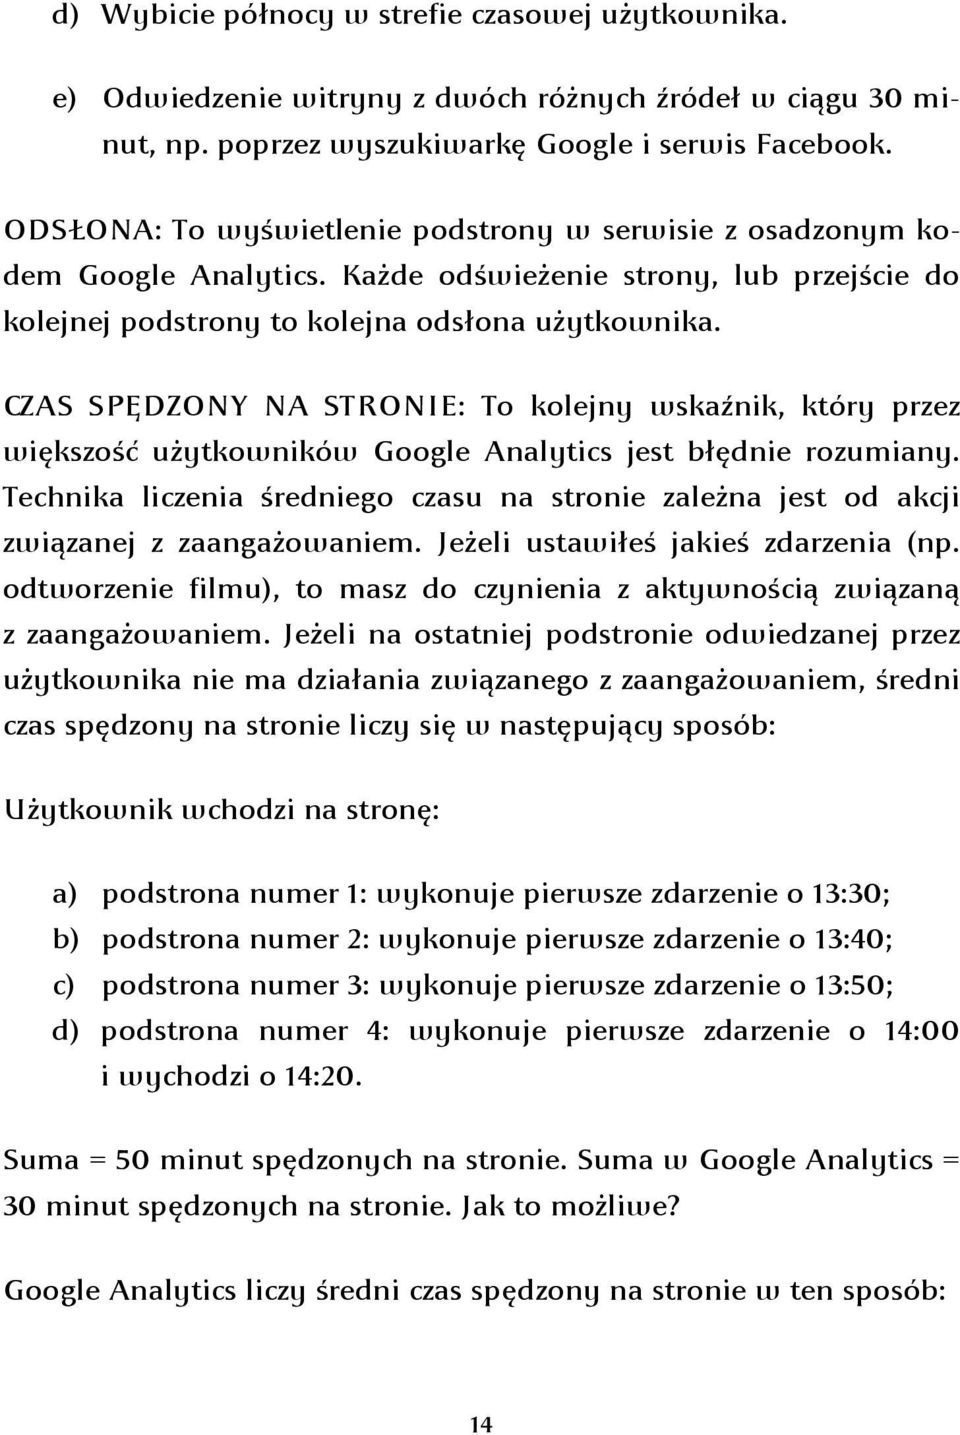 CZAS SPĘDZONY NA STRONIE: To kolejny wskaźnik, który przez większość użytkowników Google Analytics jest błędnie rozumiany.